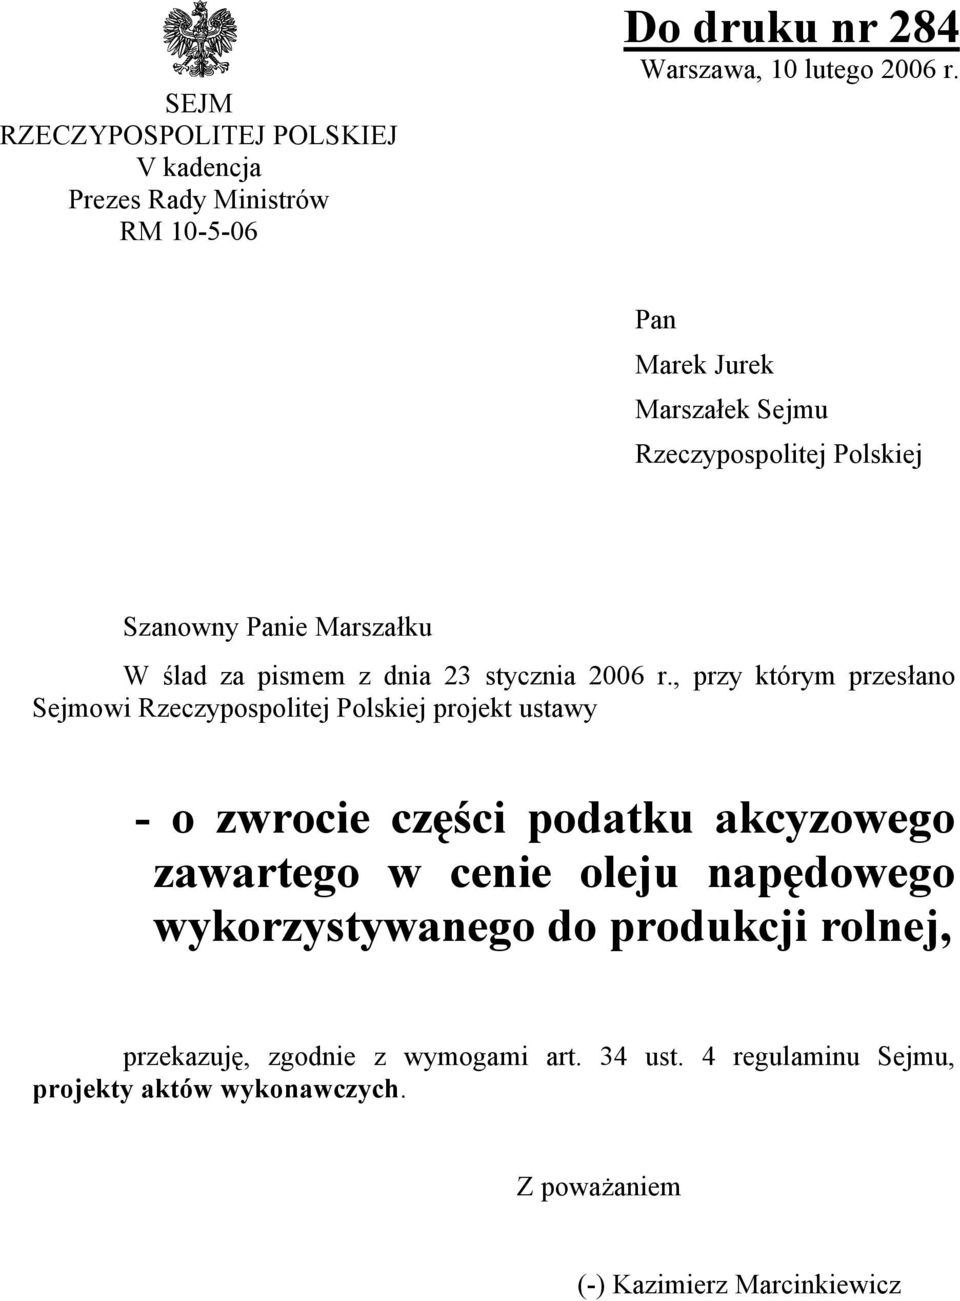 , przy którym przesłano Sejmowi Rzeczypospolitej Polskiej projekt ustawy - o zwrocie części podatku akcyzowego zawartego w cenie oleju